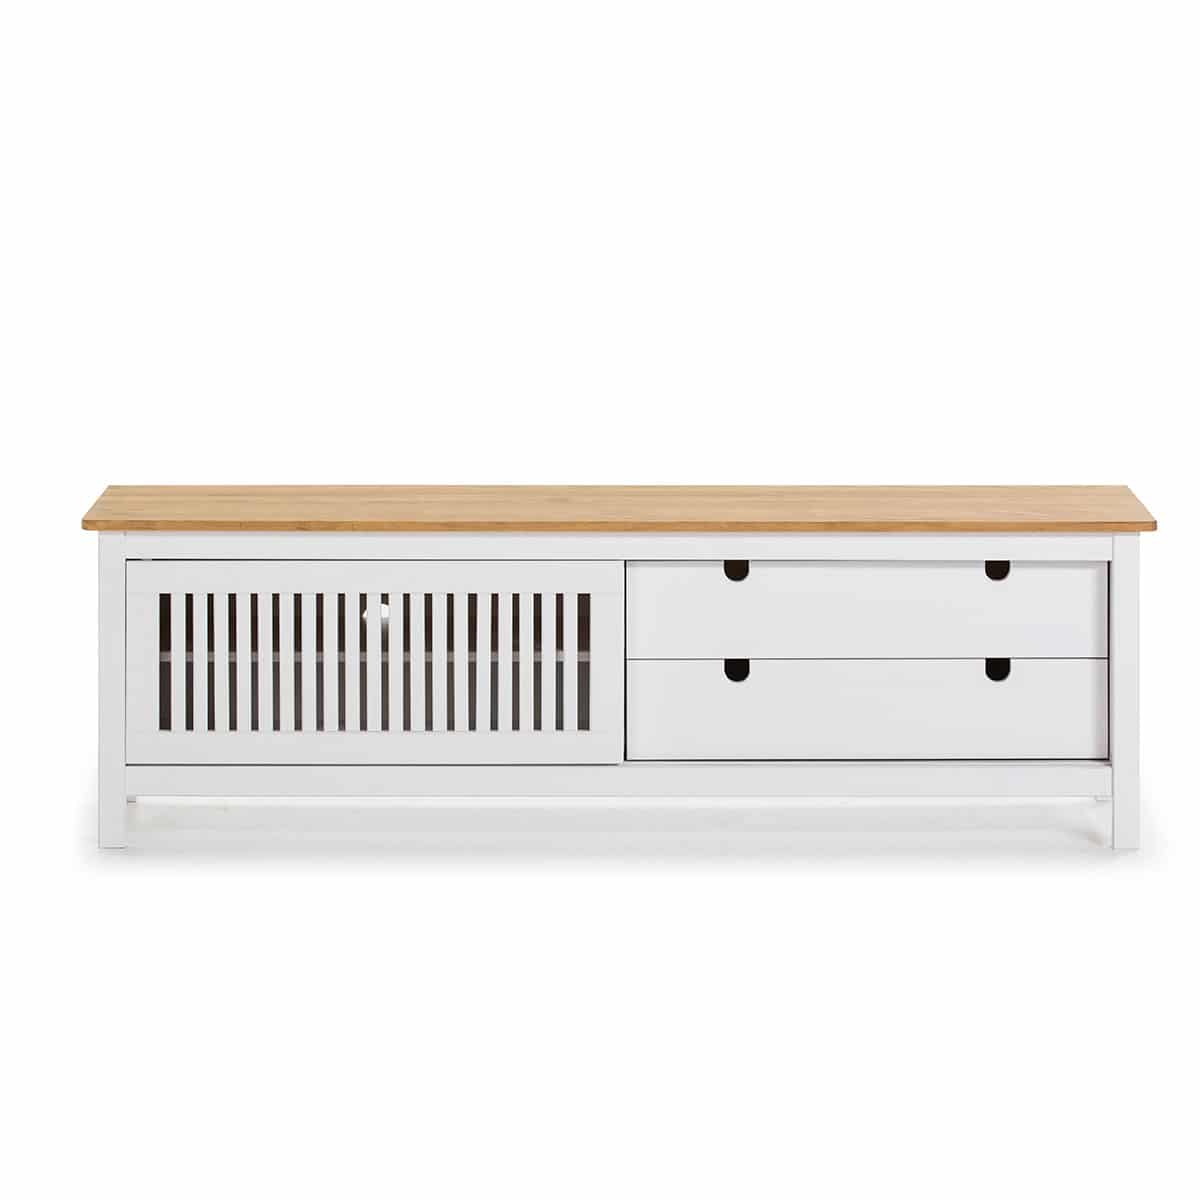 Mueble tv blanco y madera - Artikalia - Muebles de diseño